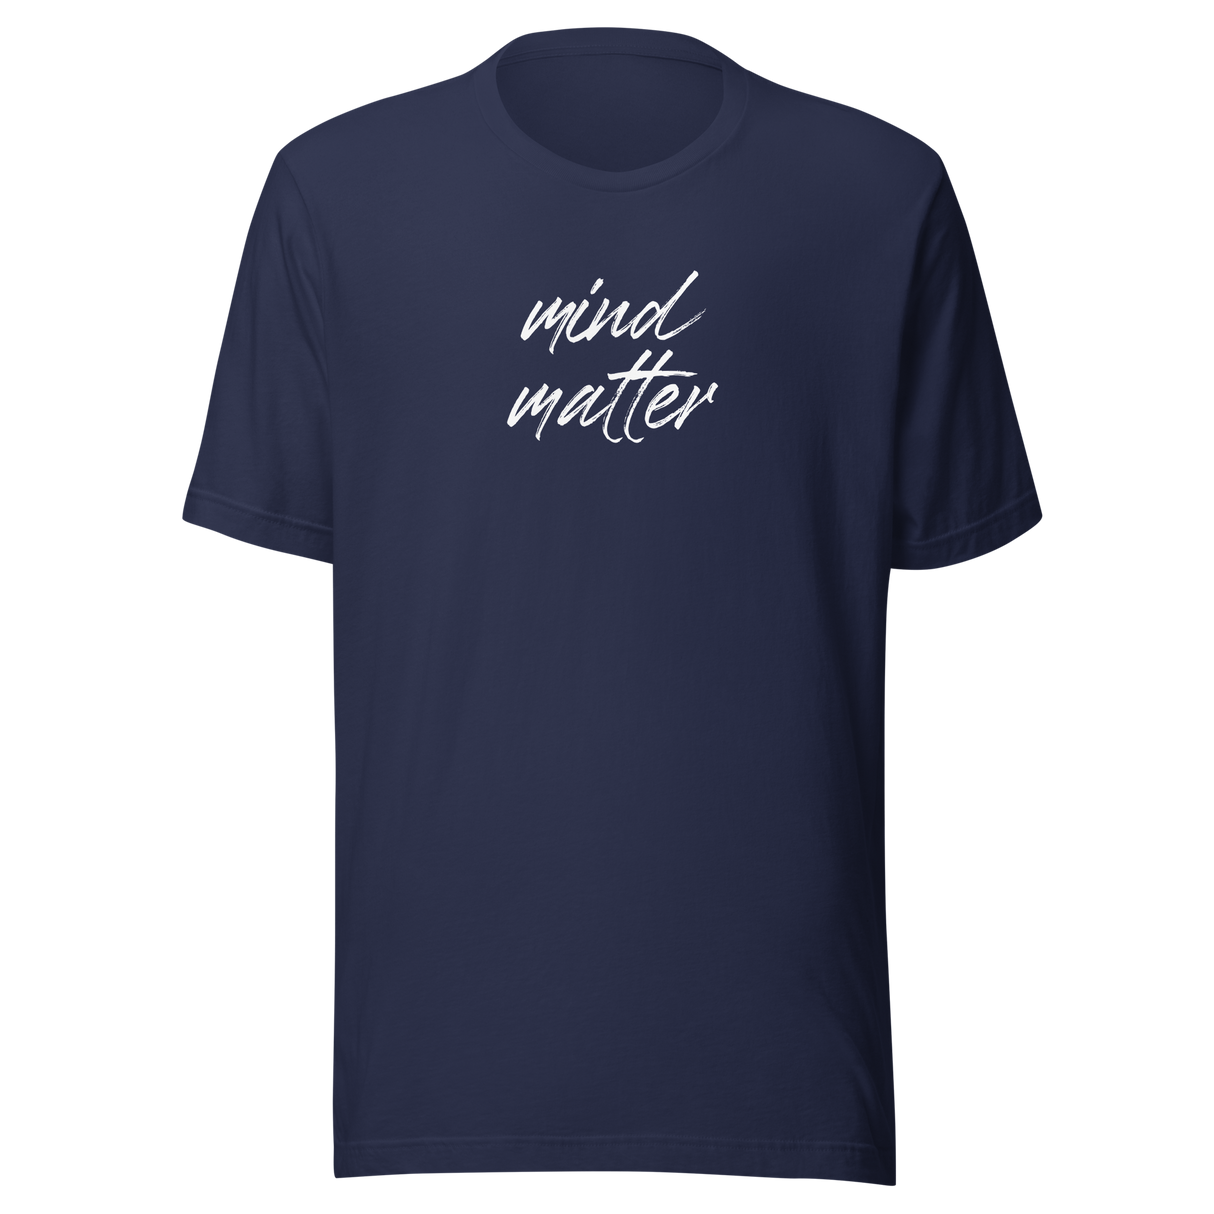 mind-over-matter-mind-over-matter-tee-mind-t-shirt-matter-tee-inspirational-t-shirt-motivational-tee#color_navy